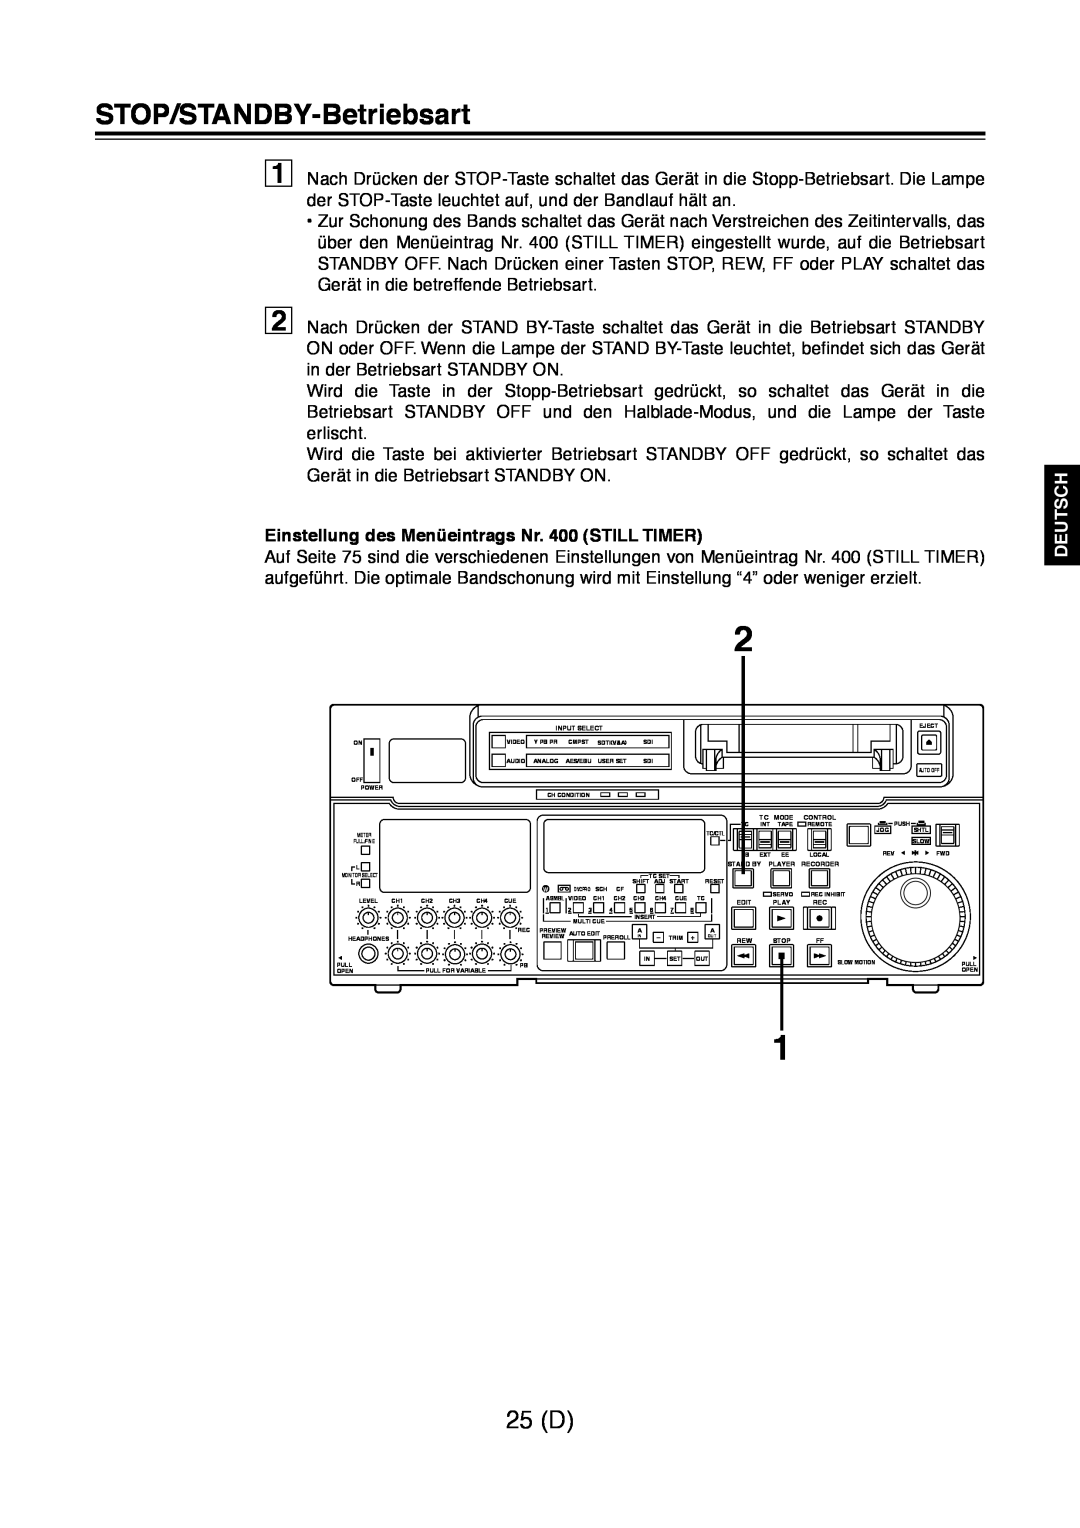 Panasonic AJ-D960 STOP/STANDBY-Betriebsart, 25 D, Einstellung des Menüeintrags Nr. 400 STILL TIMER, Deutsch 